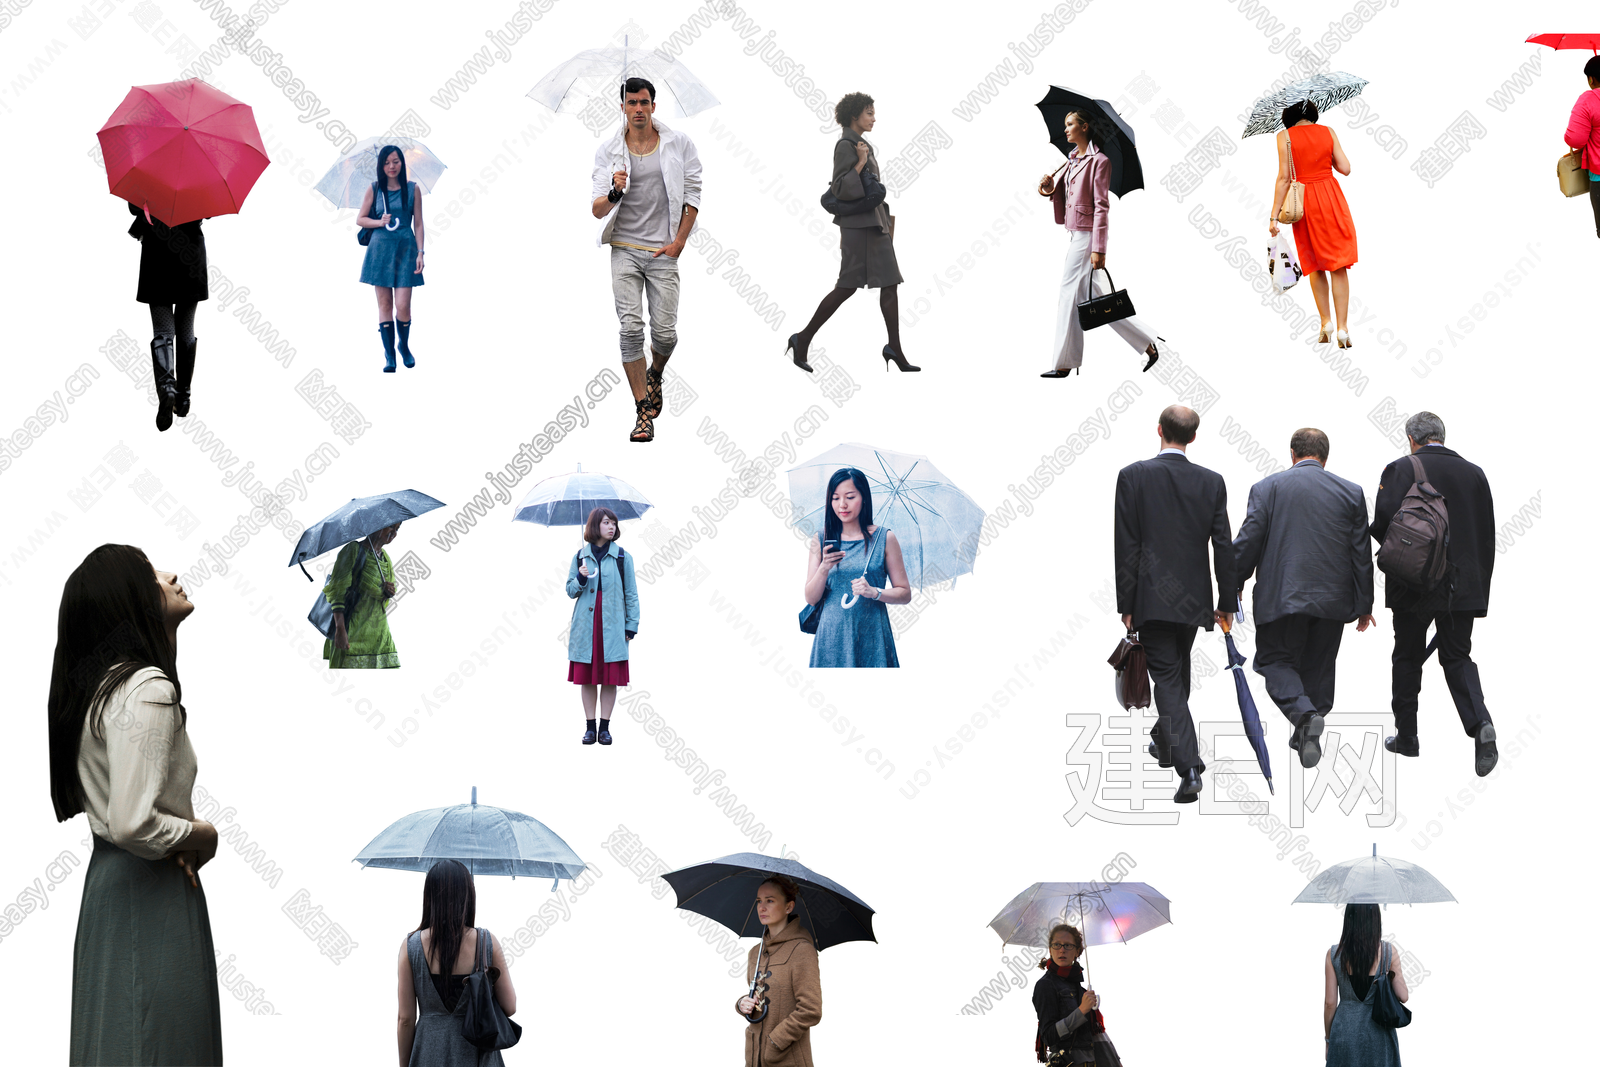 年轻情侣打着雨伞-蓝牛仔影像-中国原创广告影像素材